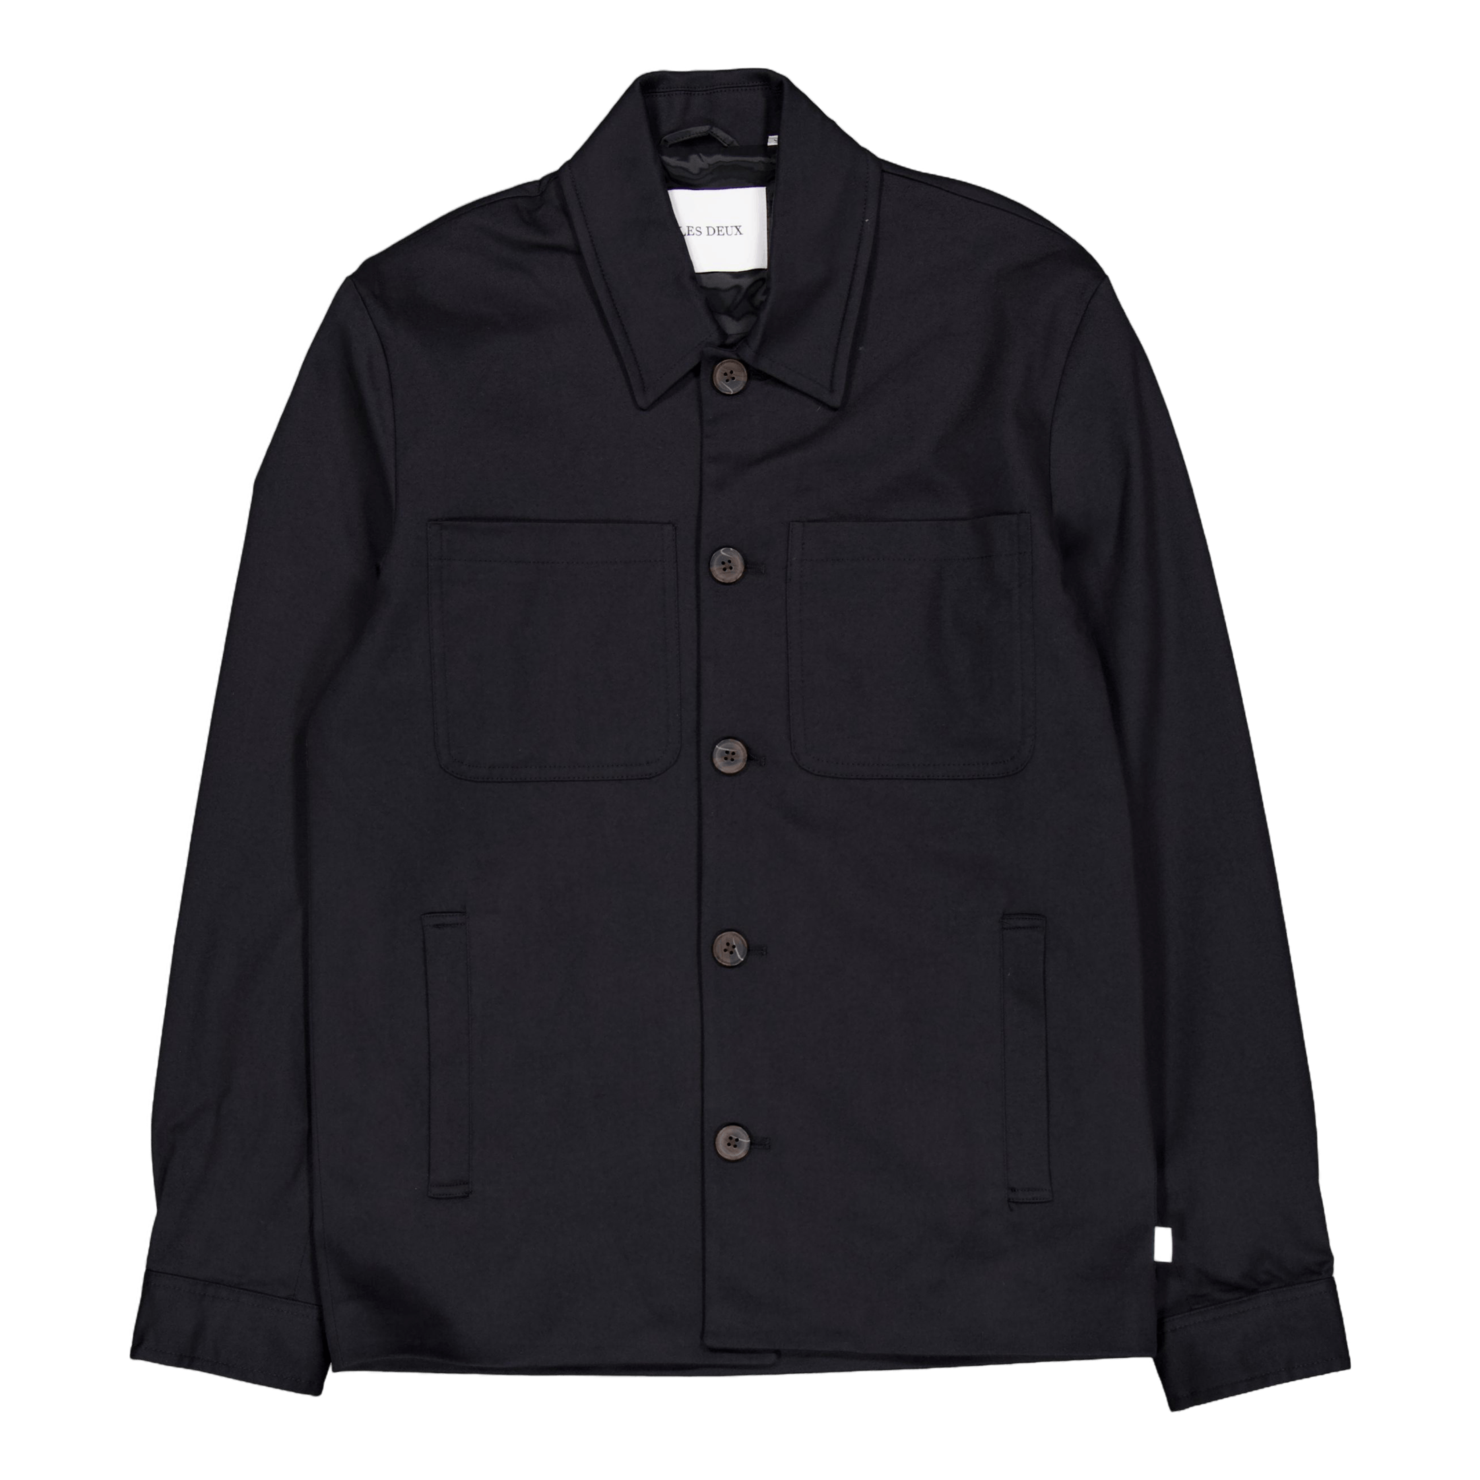 Marseille Cotton Jacket Black för 2499 kr på Stayhard